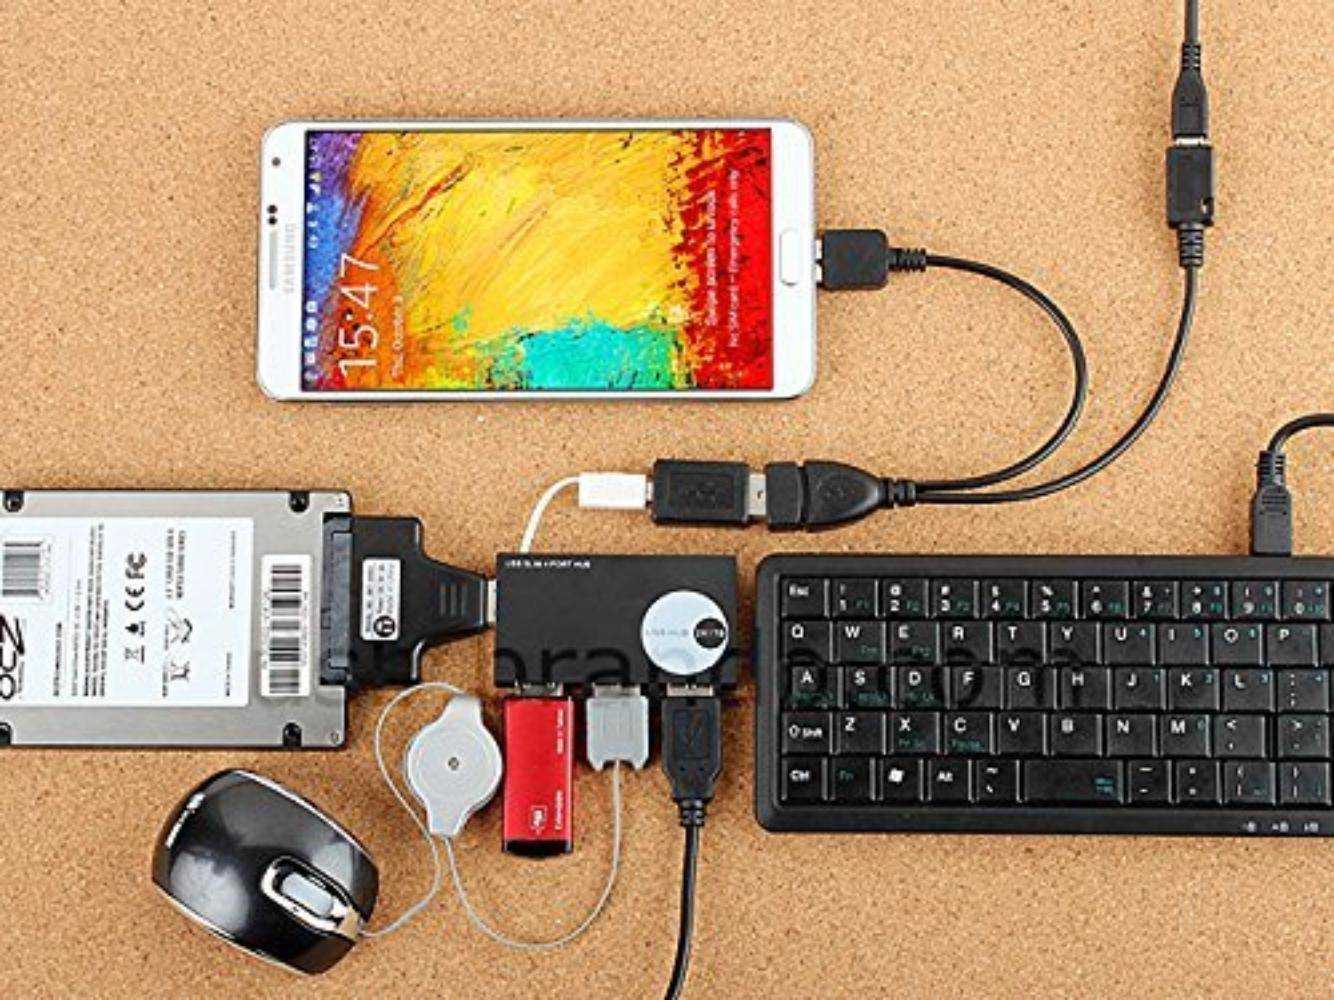 Управление телефоном через usb. USB 3.0 OTG Power. Флешка к планшету через юсб. Nokia e61 OTG. Переходник с планшета на мышку и клавиатуру.